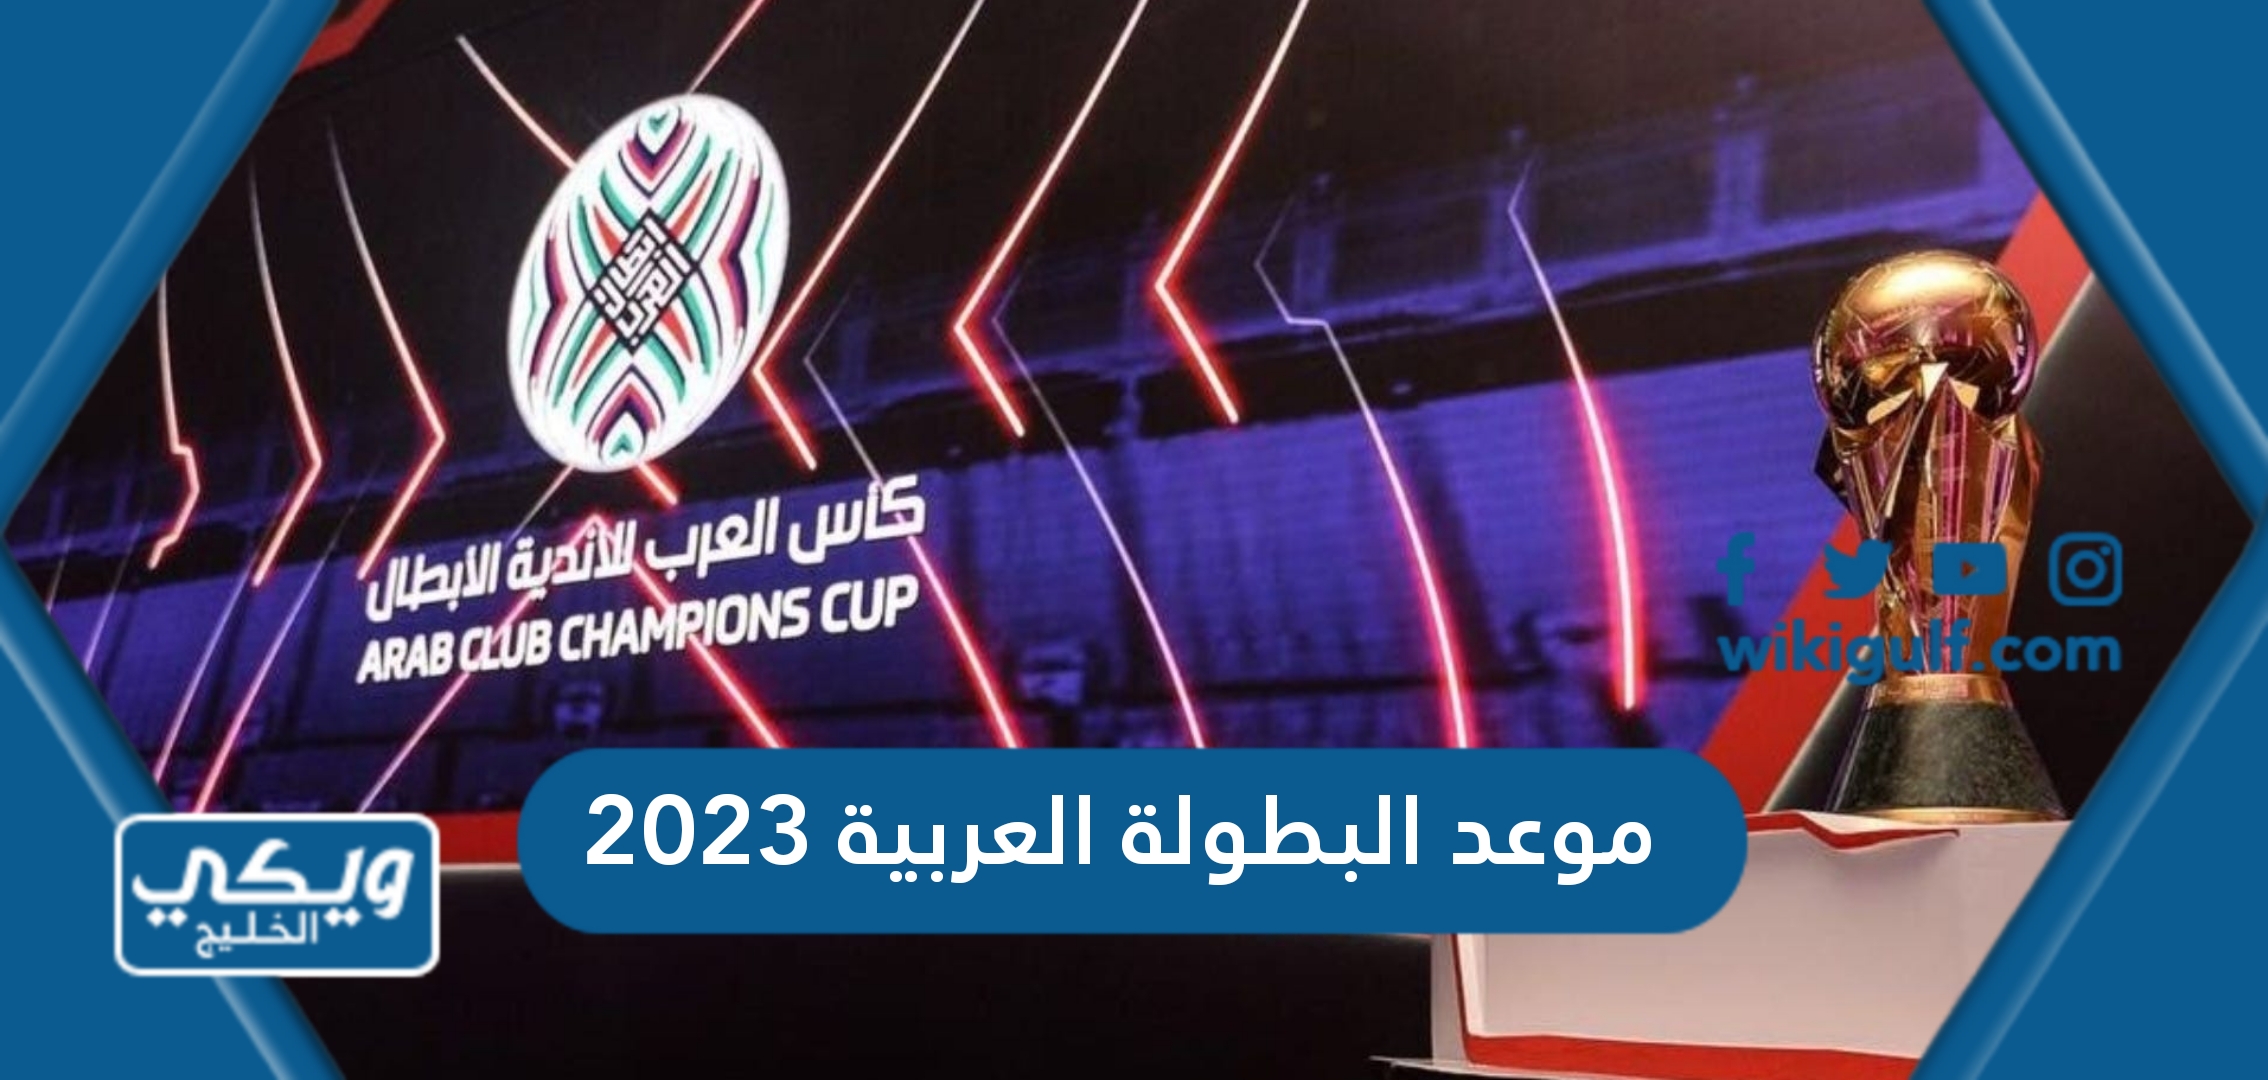 موعد البطولة العربية للاندية الأبطال 2023 العد التنازلي